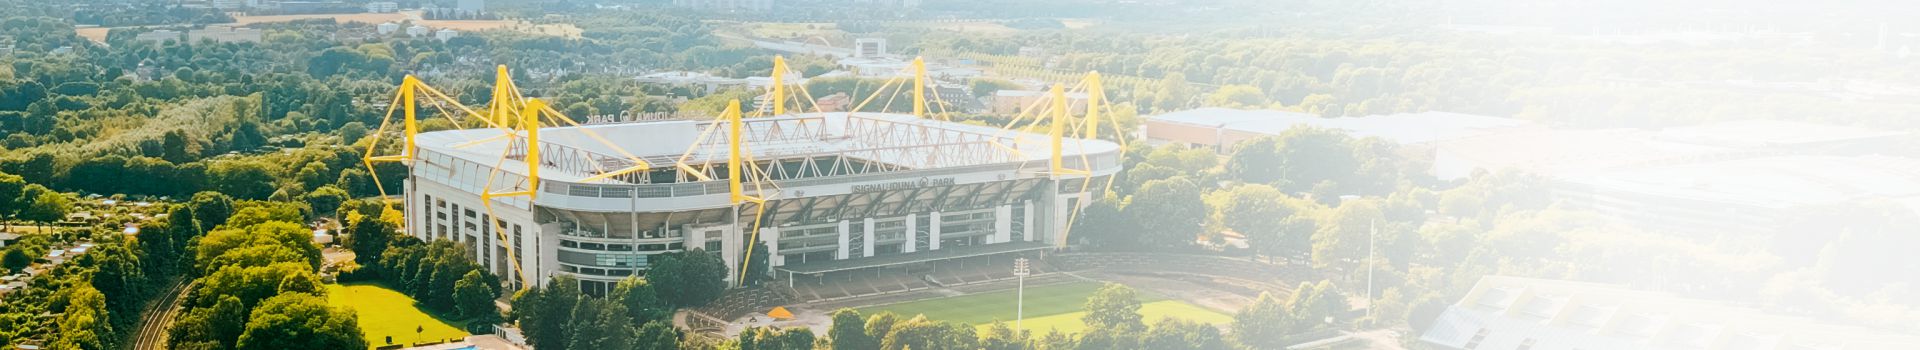 Luftaufnahme des Fußballstadions BVB Borussia, Signal Iduna Park in Dortmund, Deutschland.